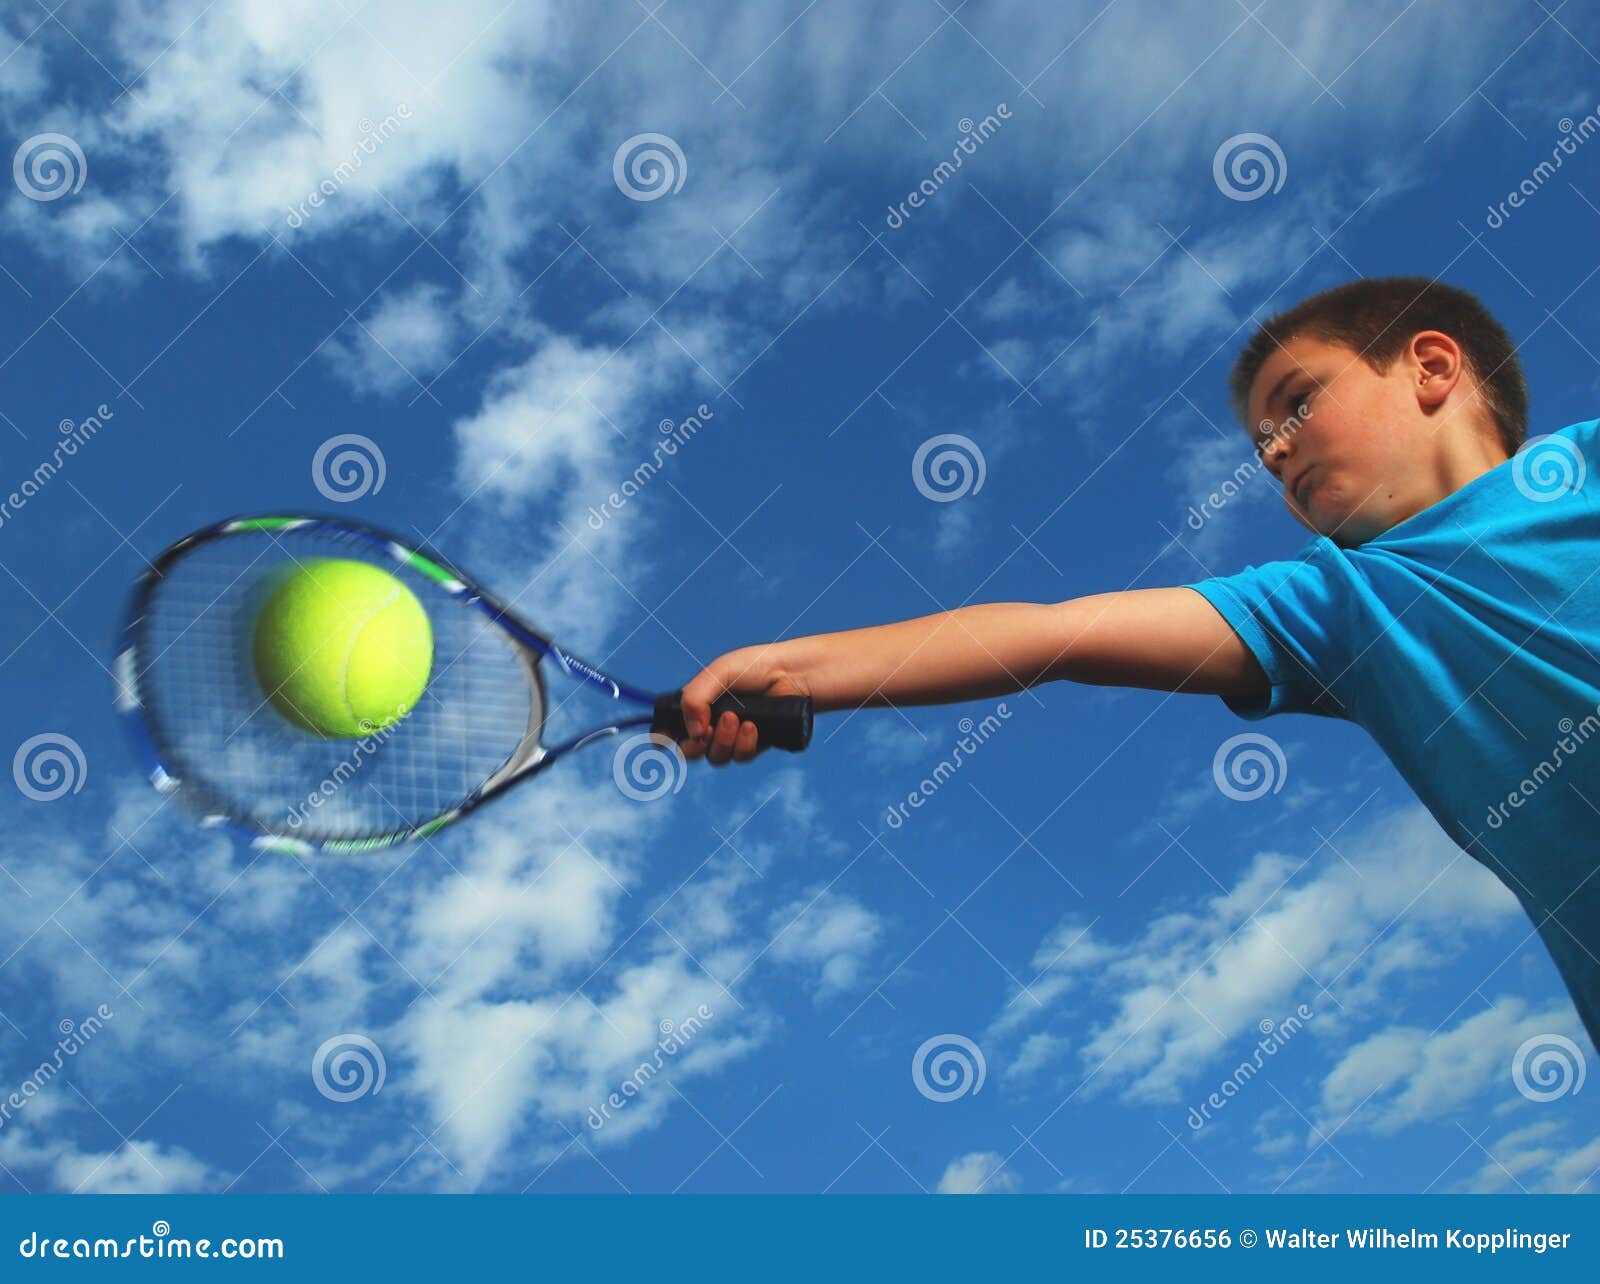 junior tennis